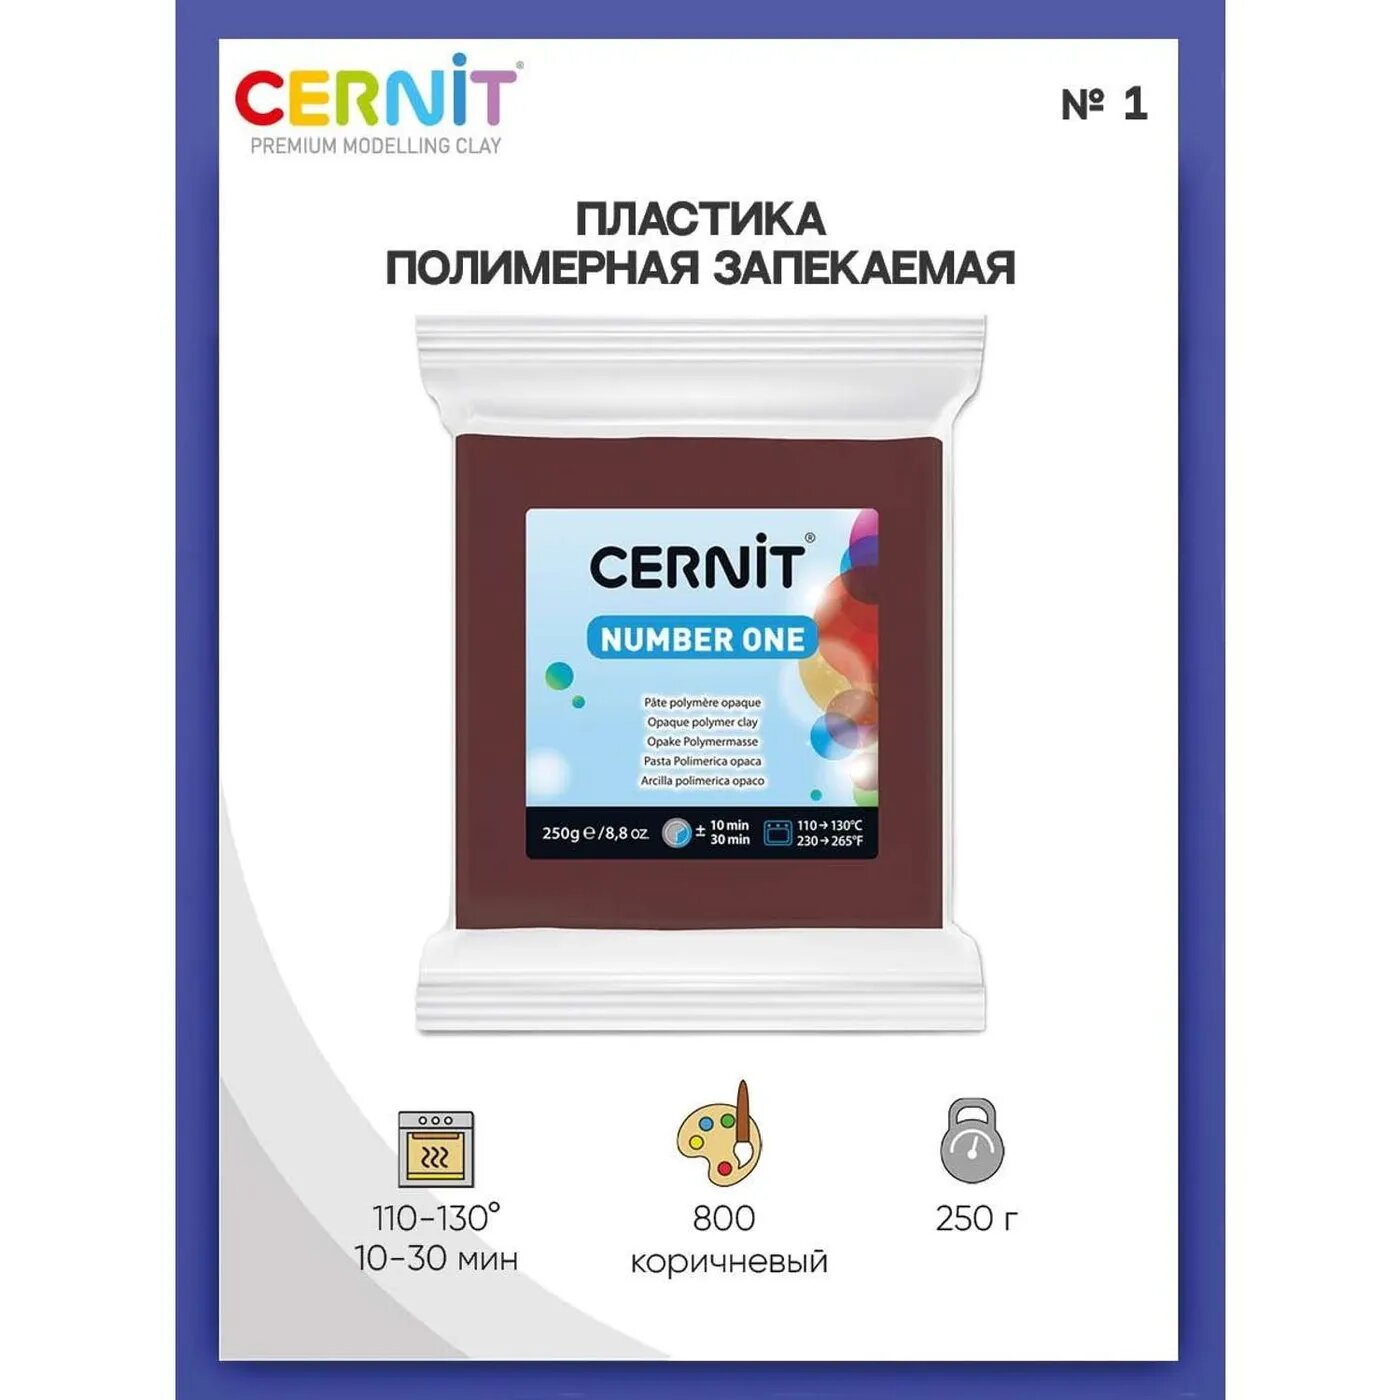 Полимерная глина Cernit пластика запекаемая Цернит № 1 250 гр CE090025